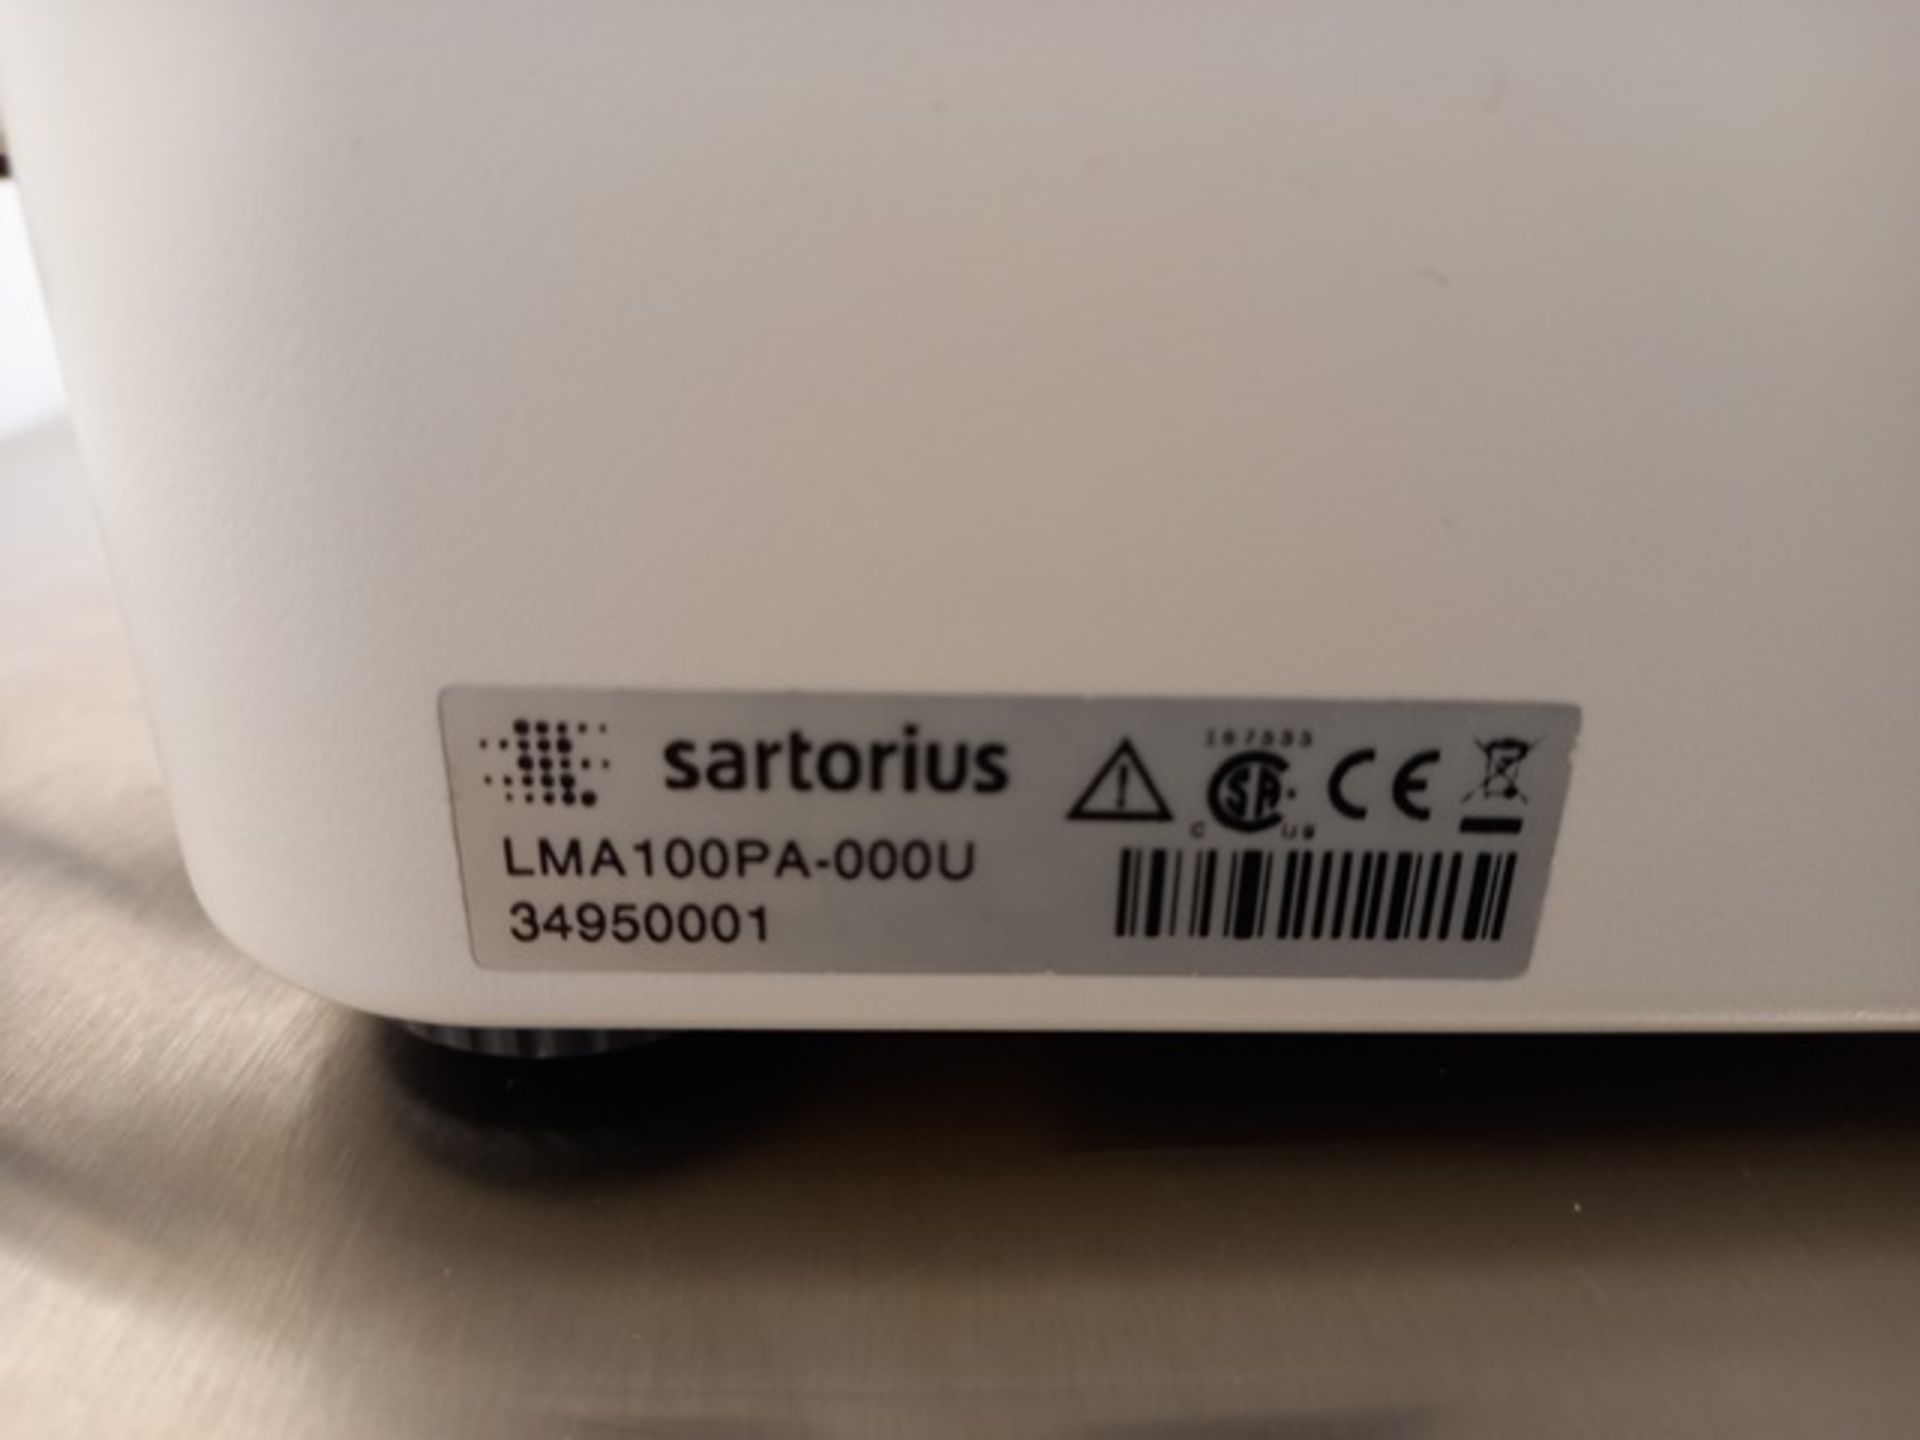 Sartorius LMA100PQ-000U Moisture Analyzer, Serial: 34850201; Year: 2018; with LMA100PA-000U Printer - Image 15 of 15